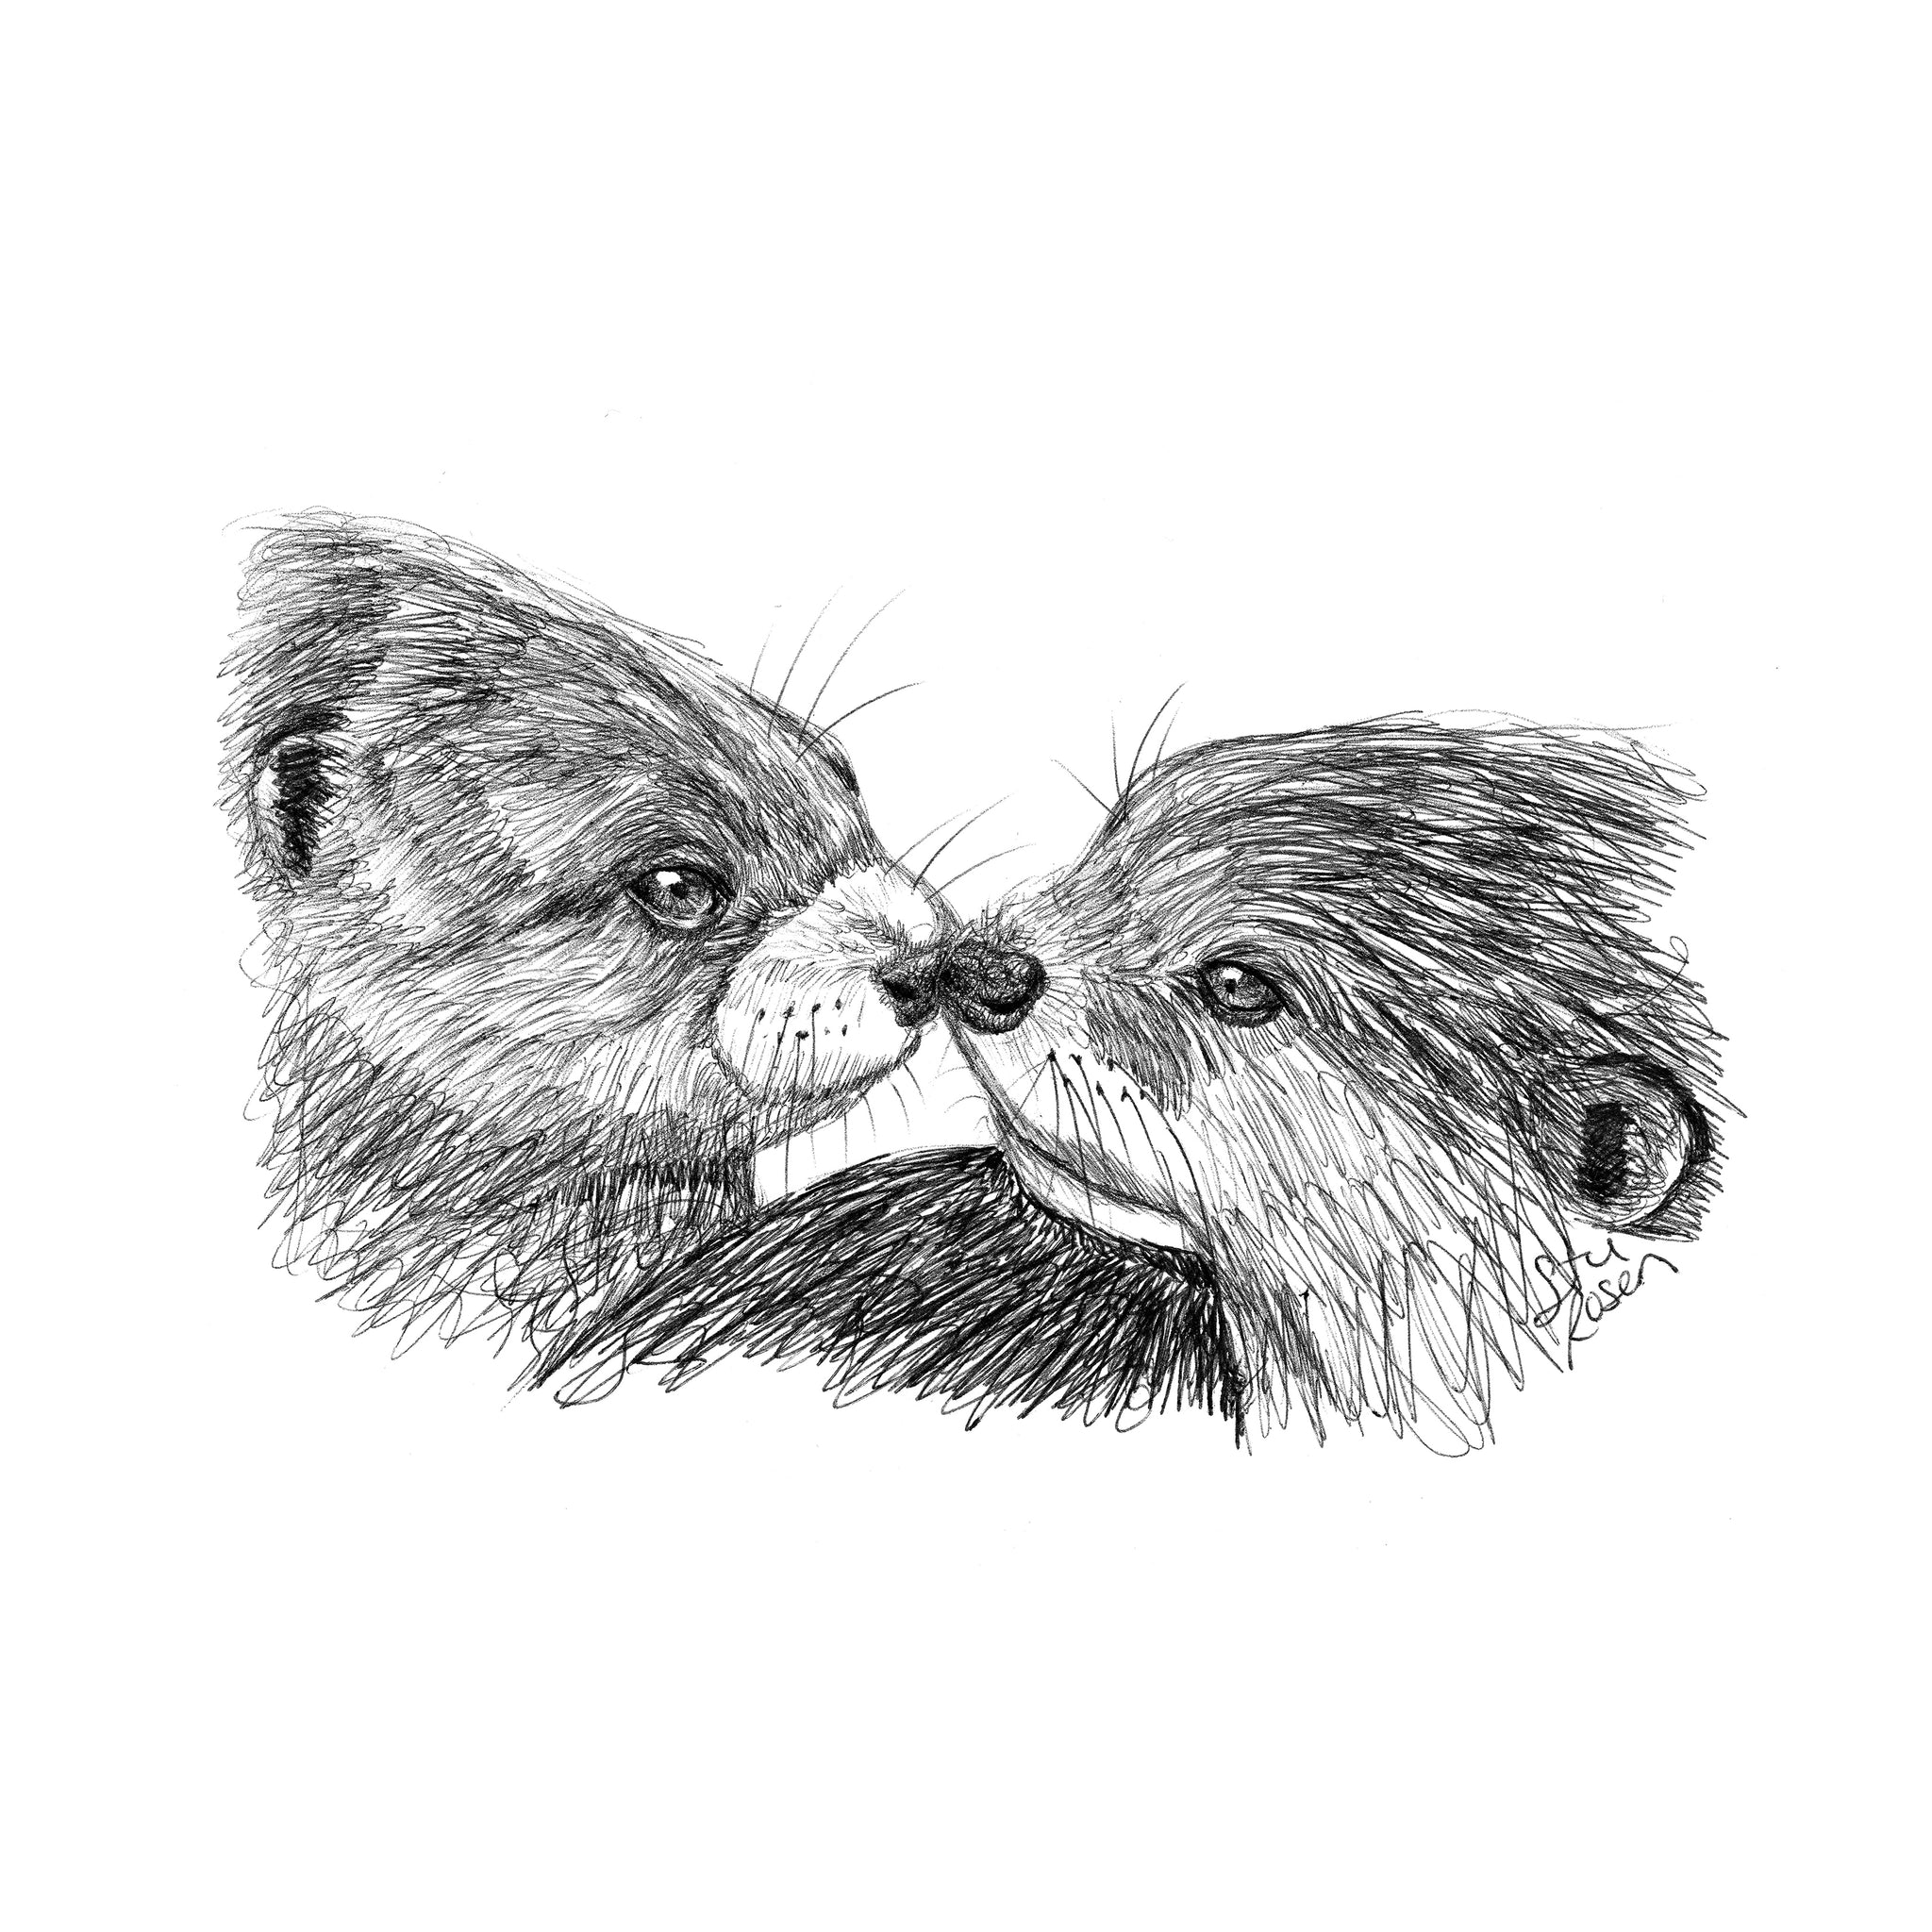 Otter - "An Otter Kiss"